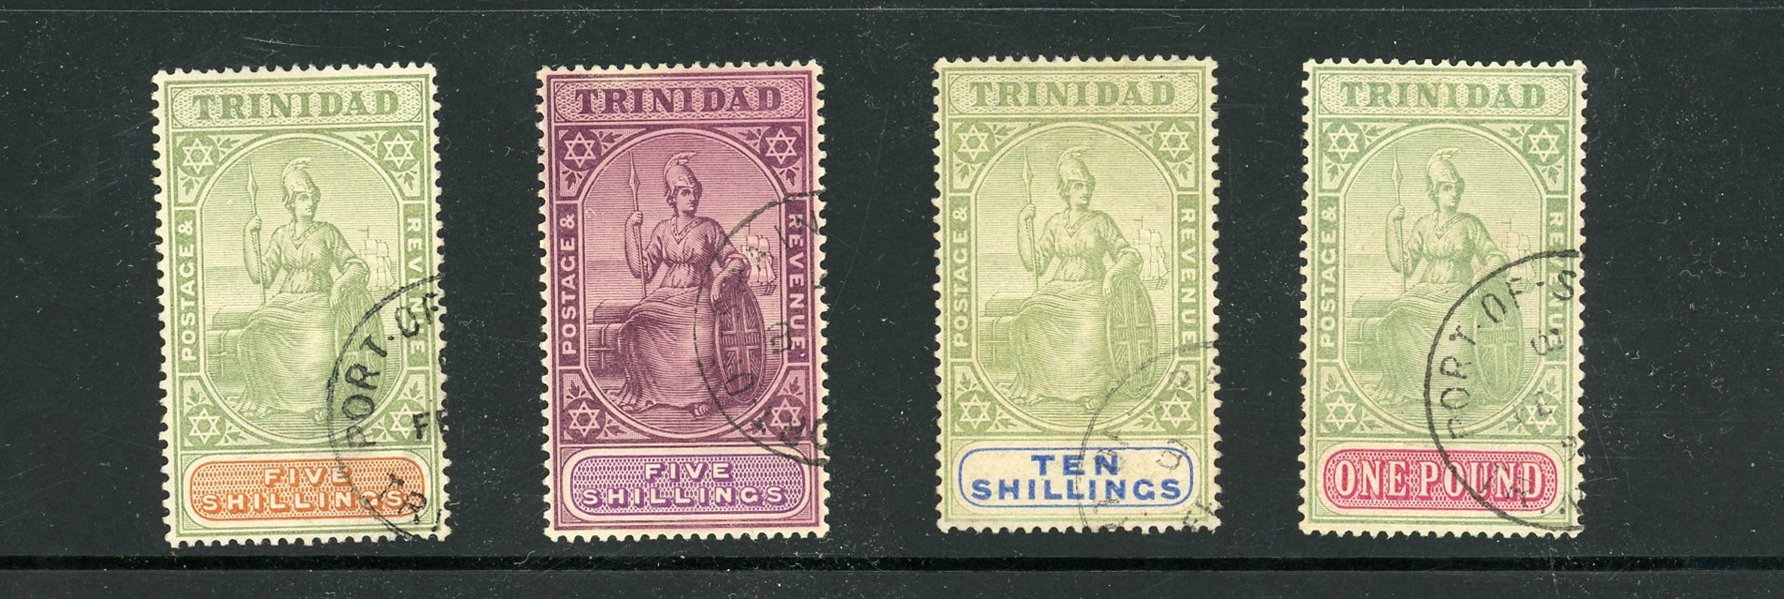 Trinidad Scott 87-90 Used High Values, F-VF (SCV $1125)